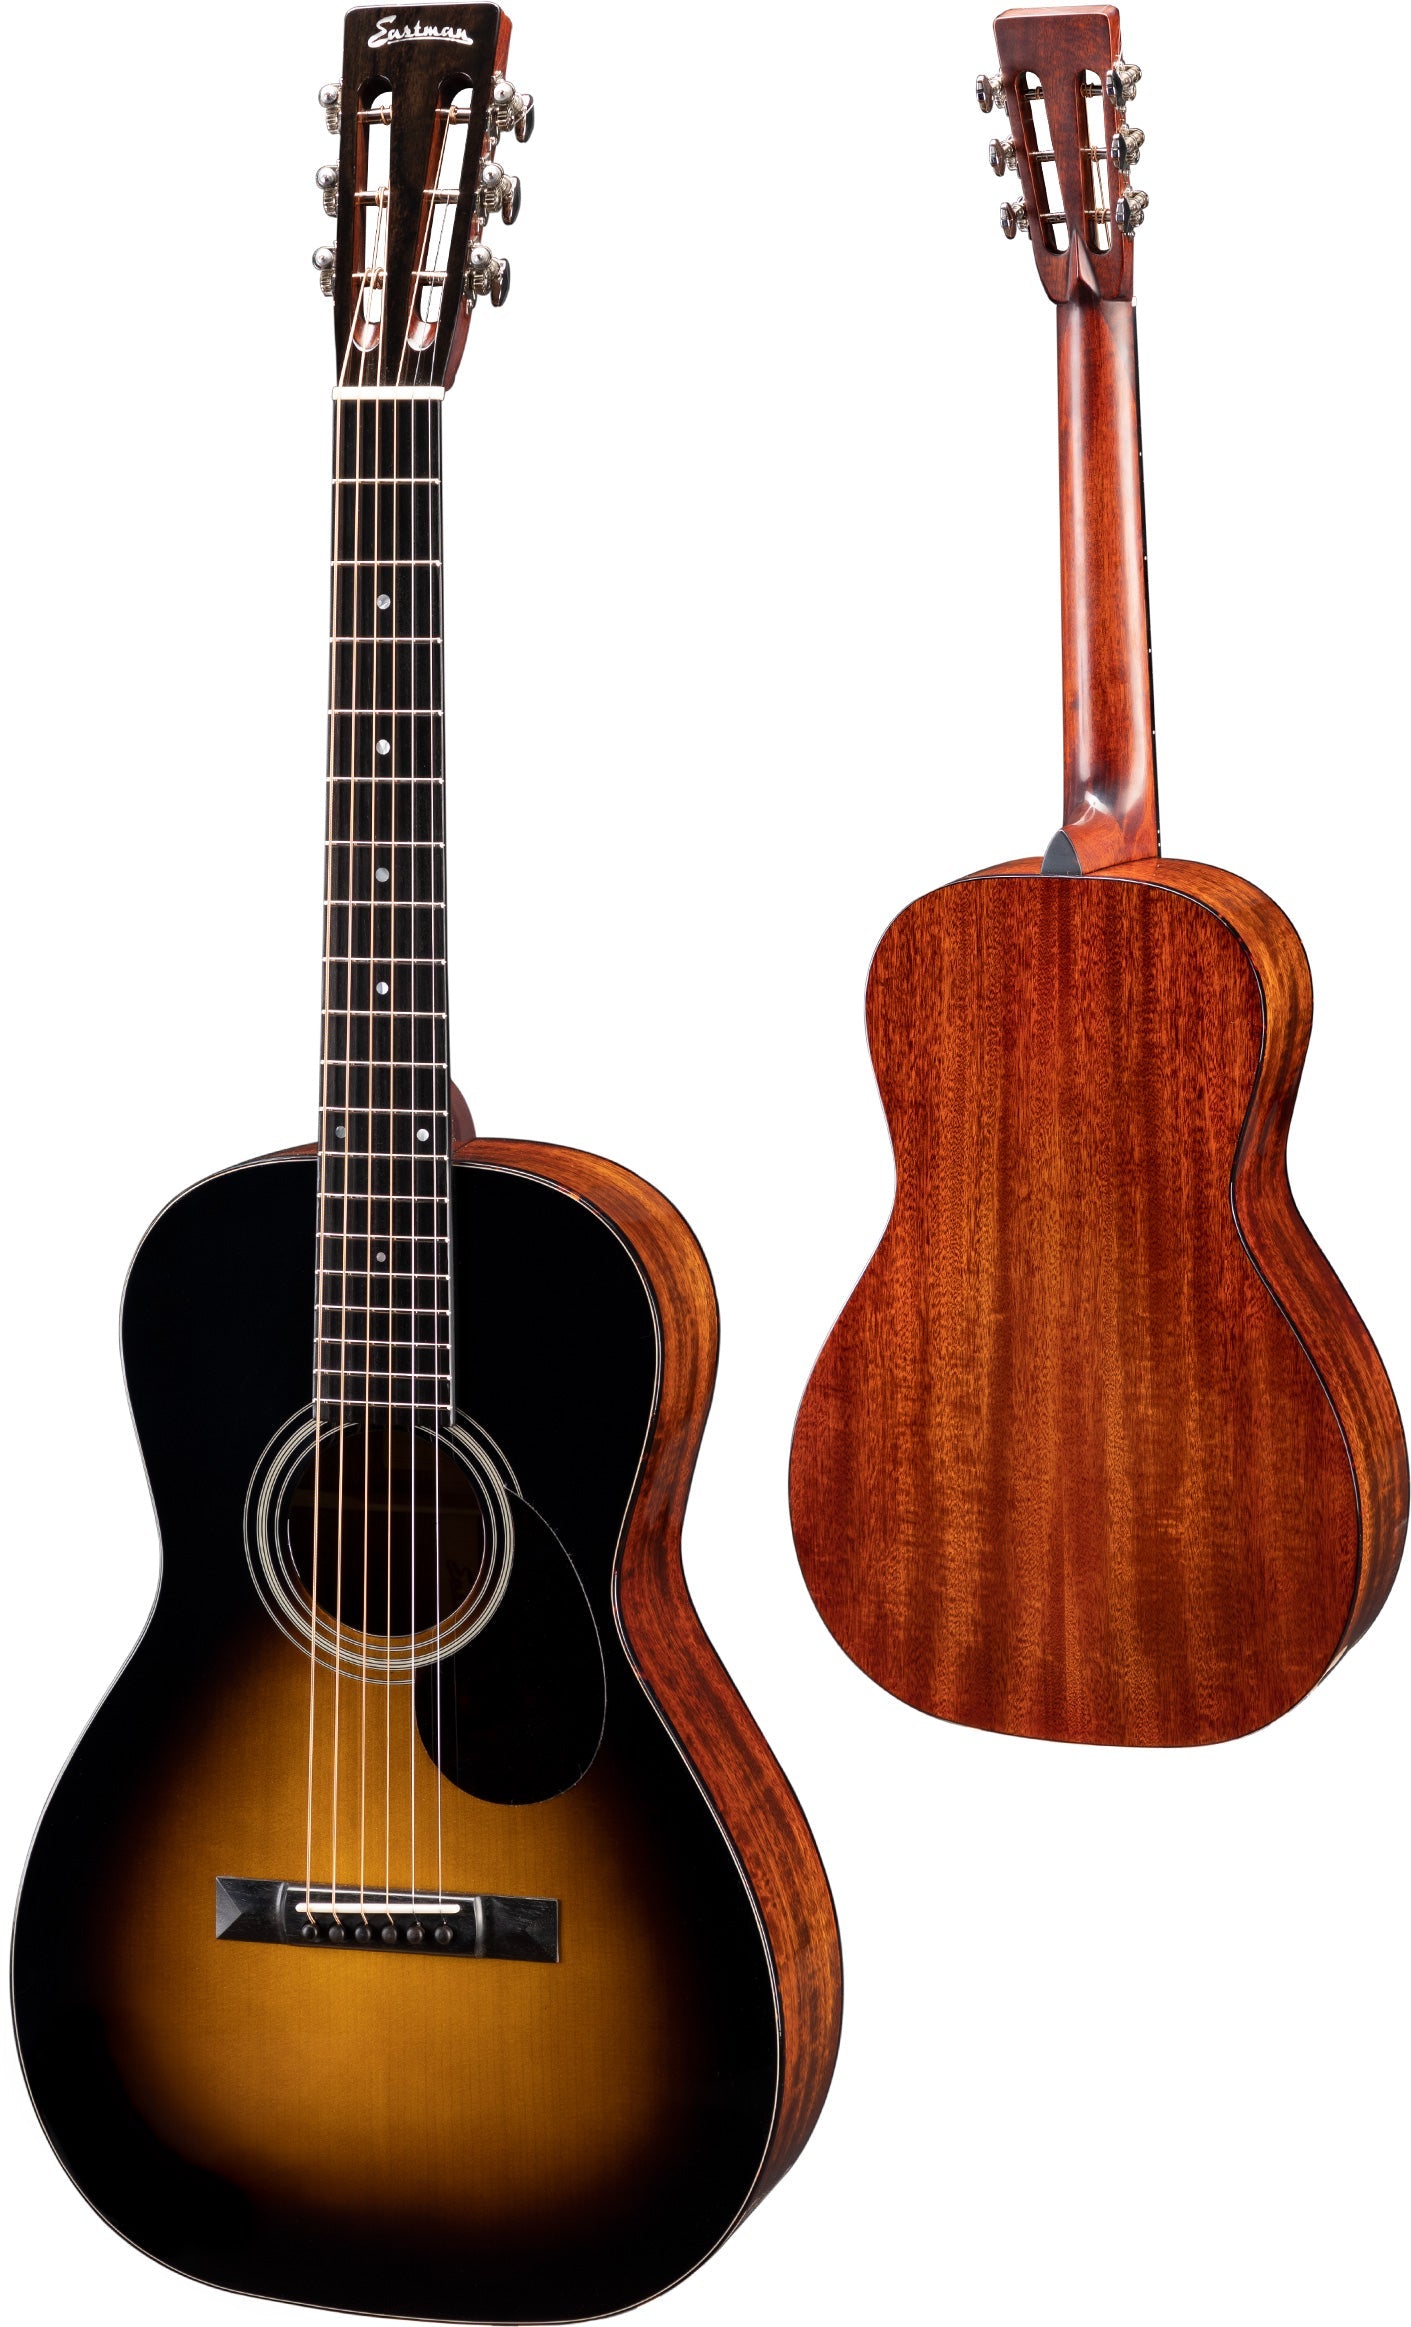 Eastman E10P-SB  Sunburst Parlour model, Acoustic Guitar for sale at Richards Guitars.